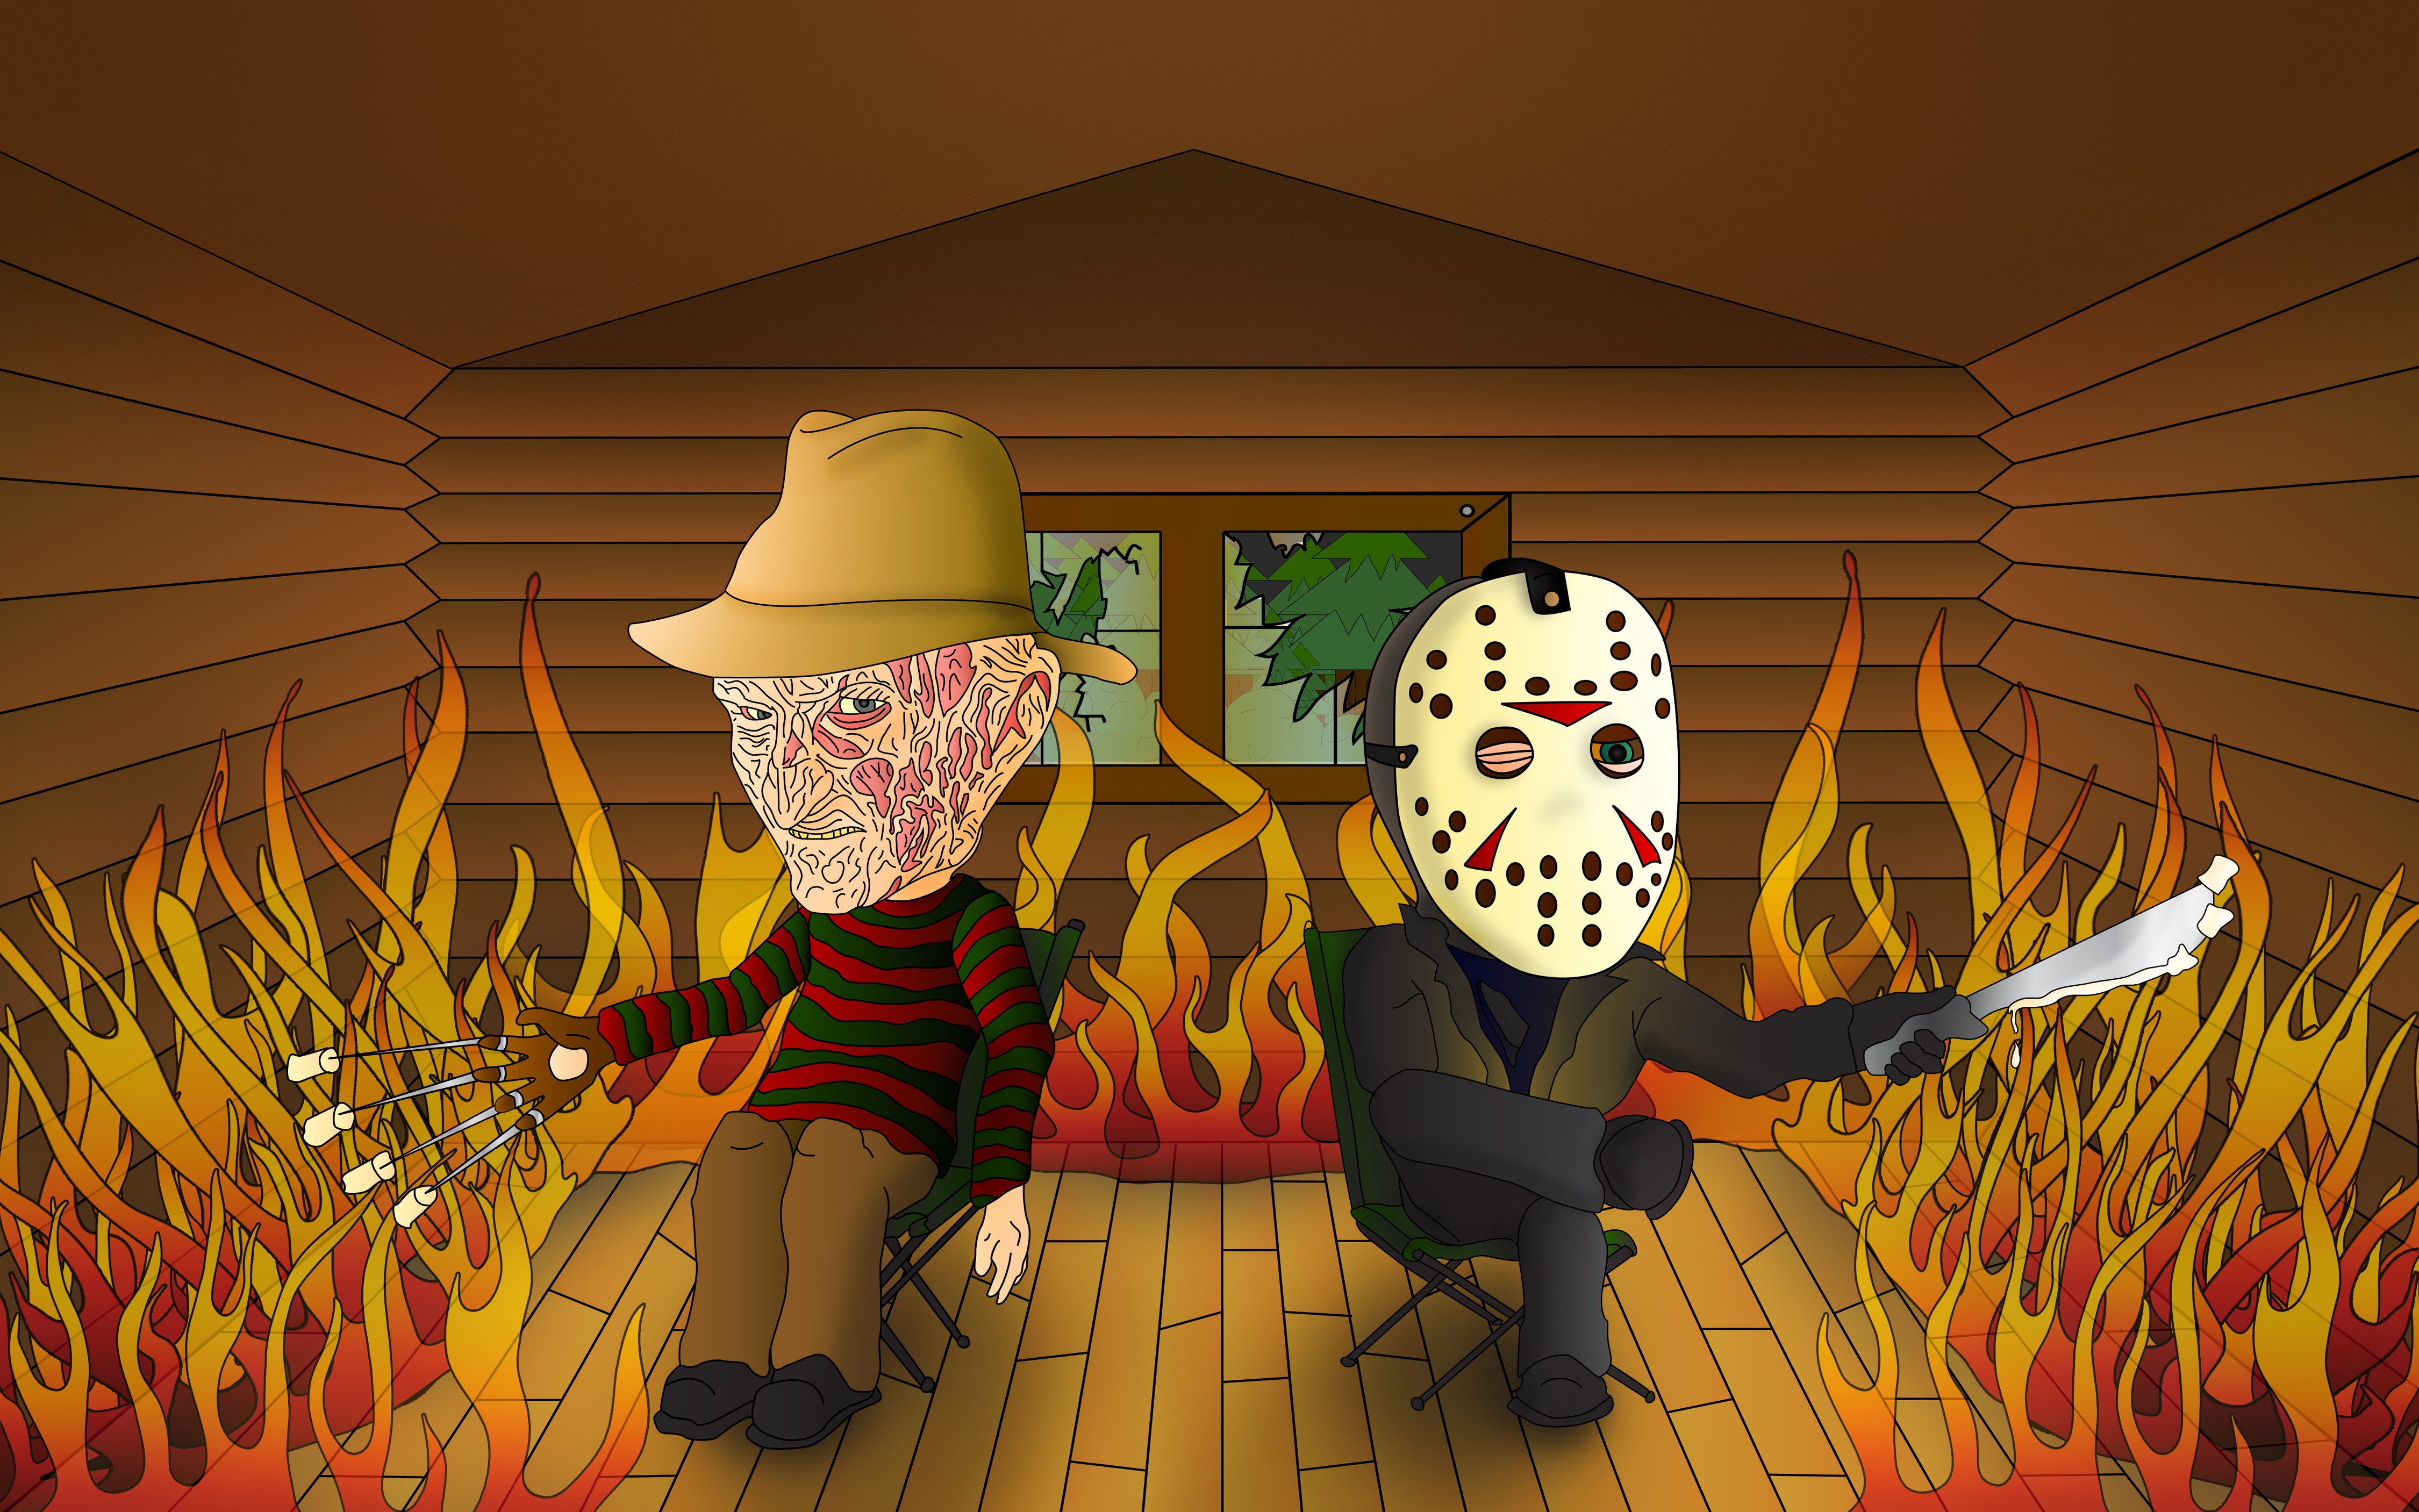 General 4500x2813 artwork Jason Voorhees Freddy Krueger humor fire movie characters cartoon